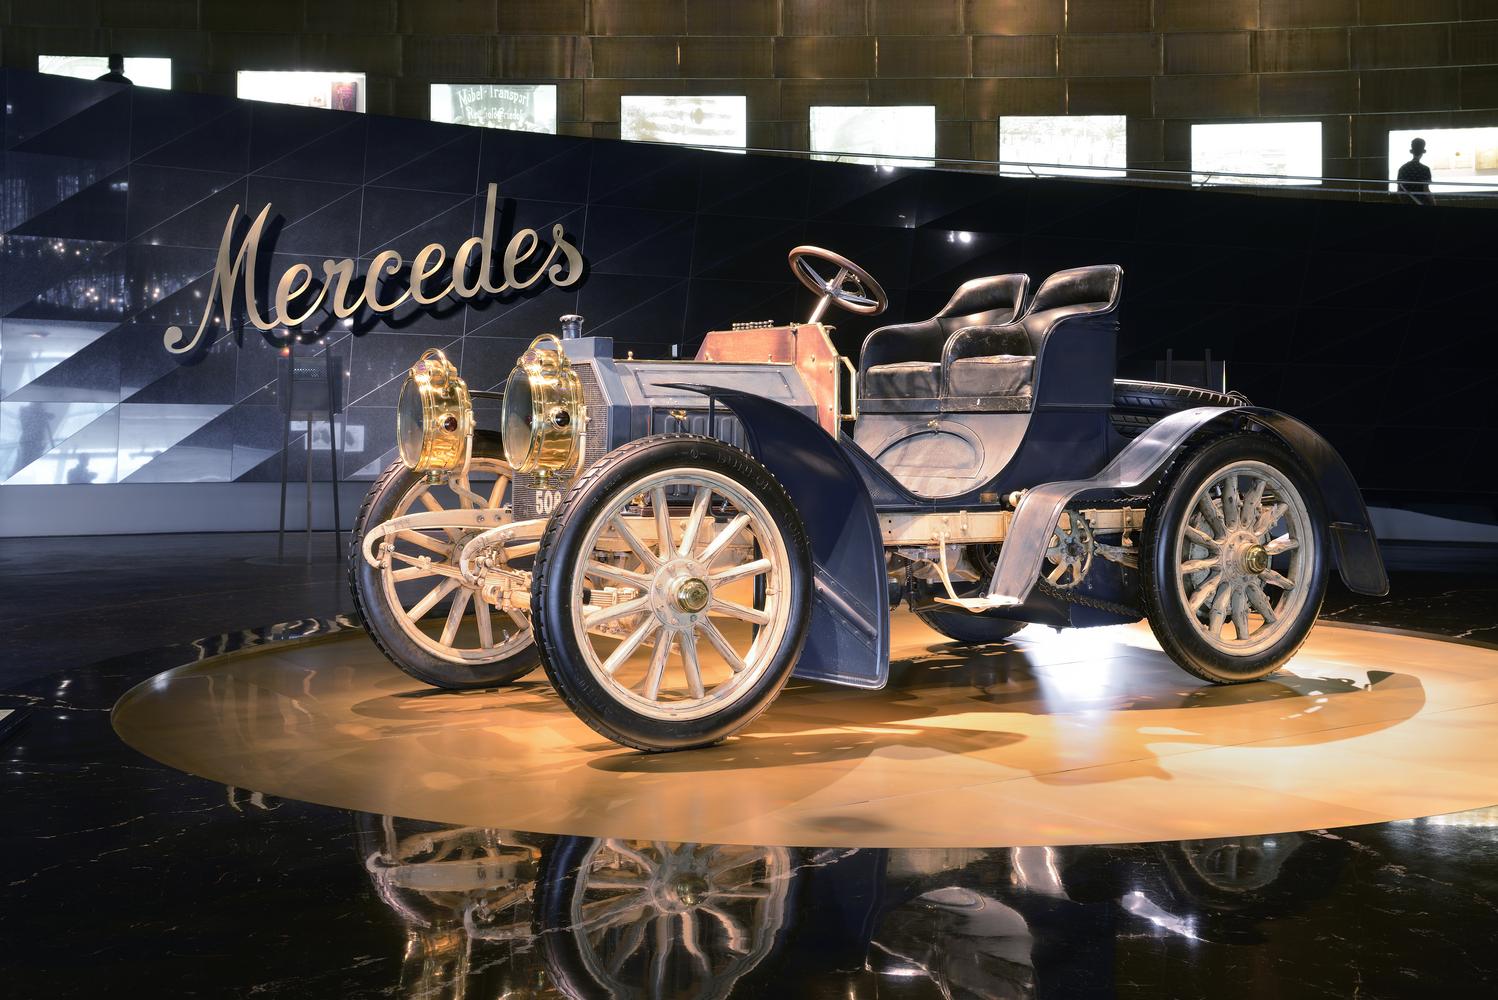 Das erste Auto der "Mercedes"-Serie war ein echter Durchbruch in der Automobilgeschichte.